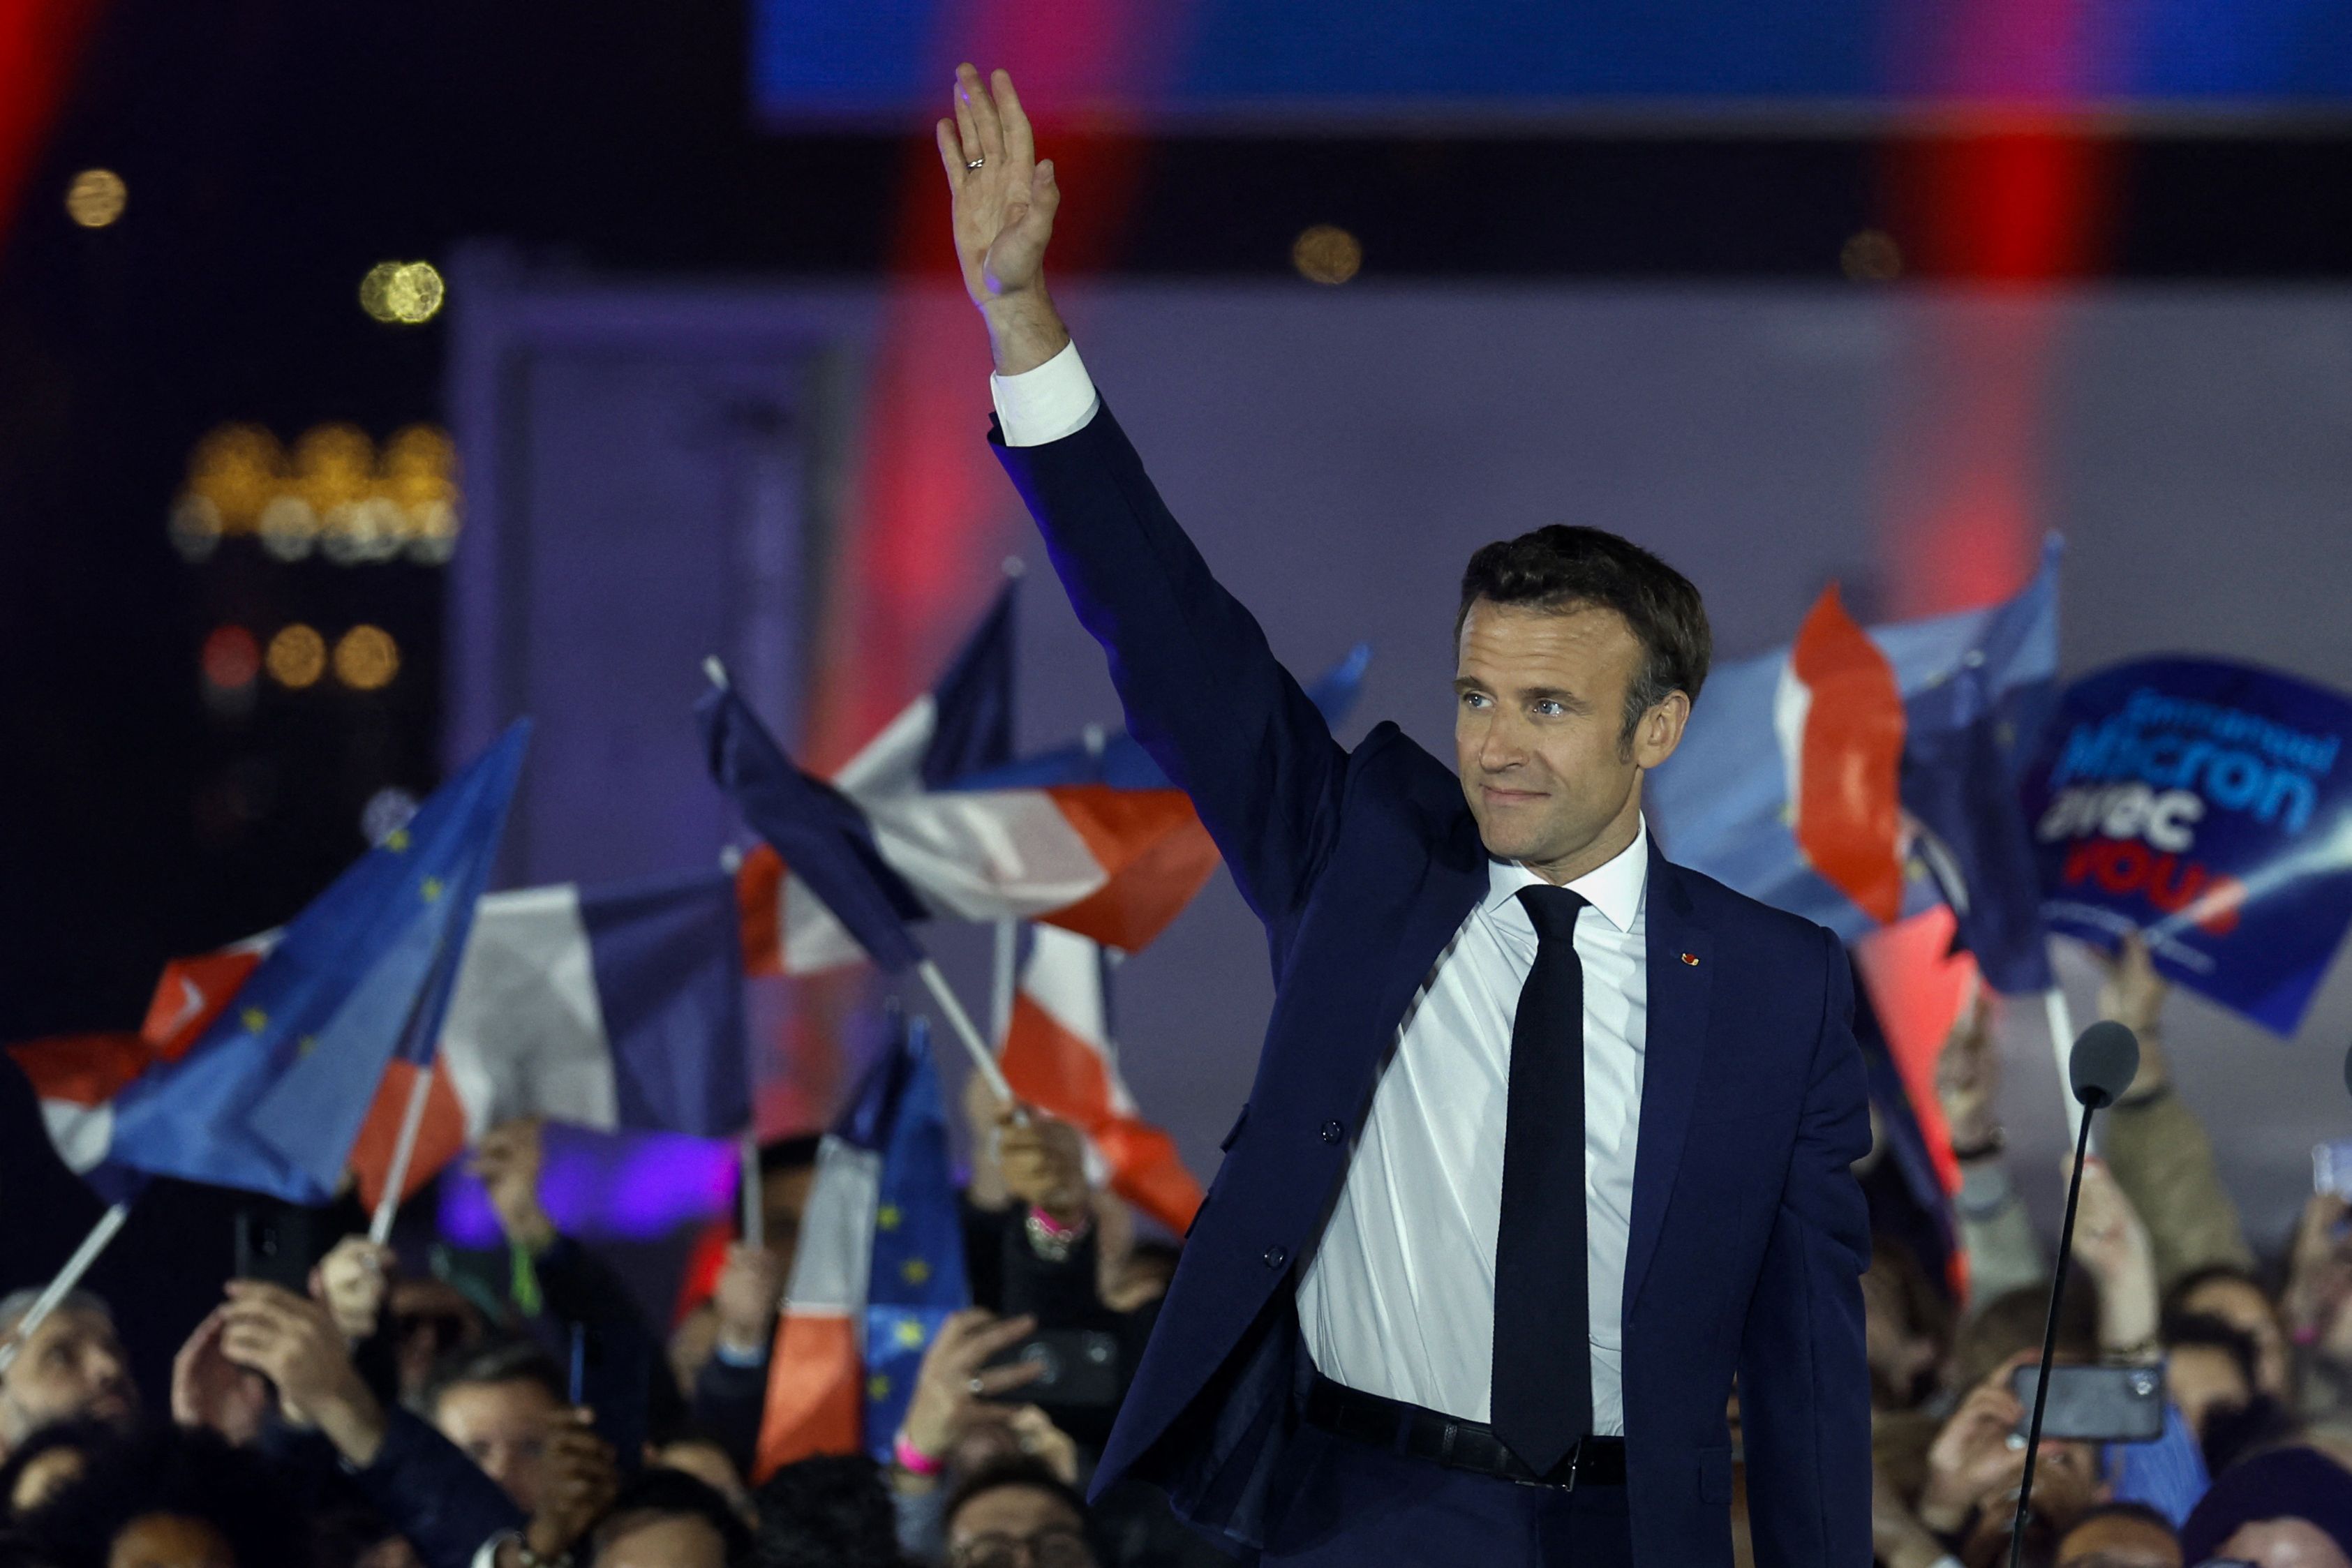 El presidente francés Emmanuel Macron saluda en el escenario tras ser reelegido como presidente (REUTERS/Gonzalo Fuentes)